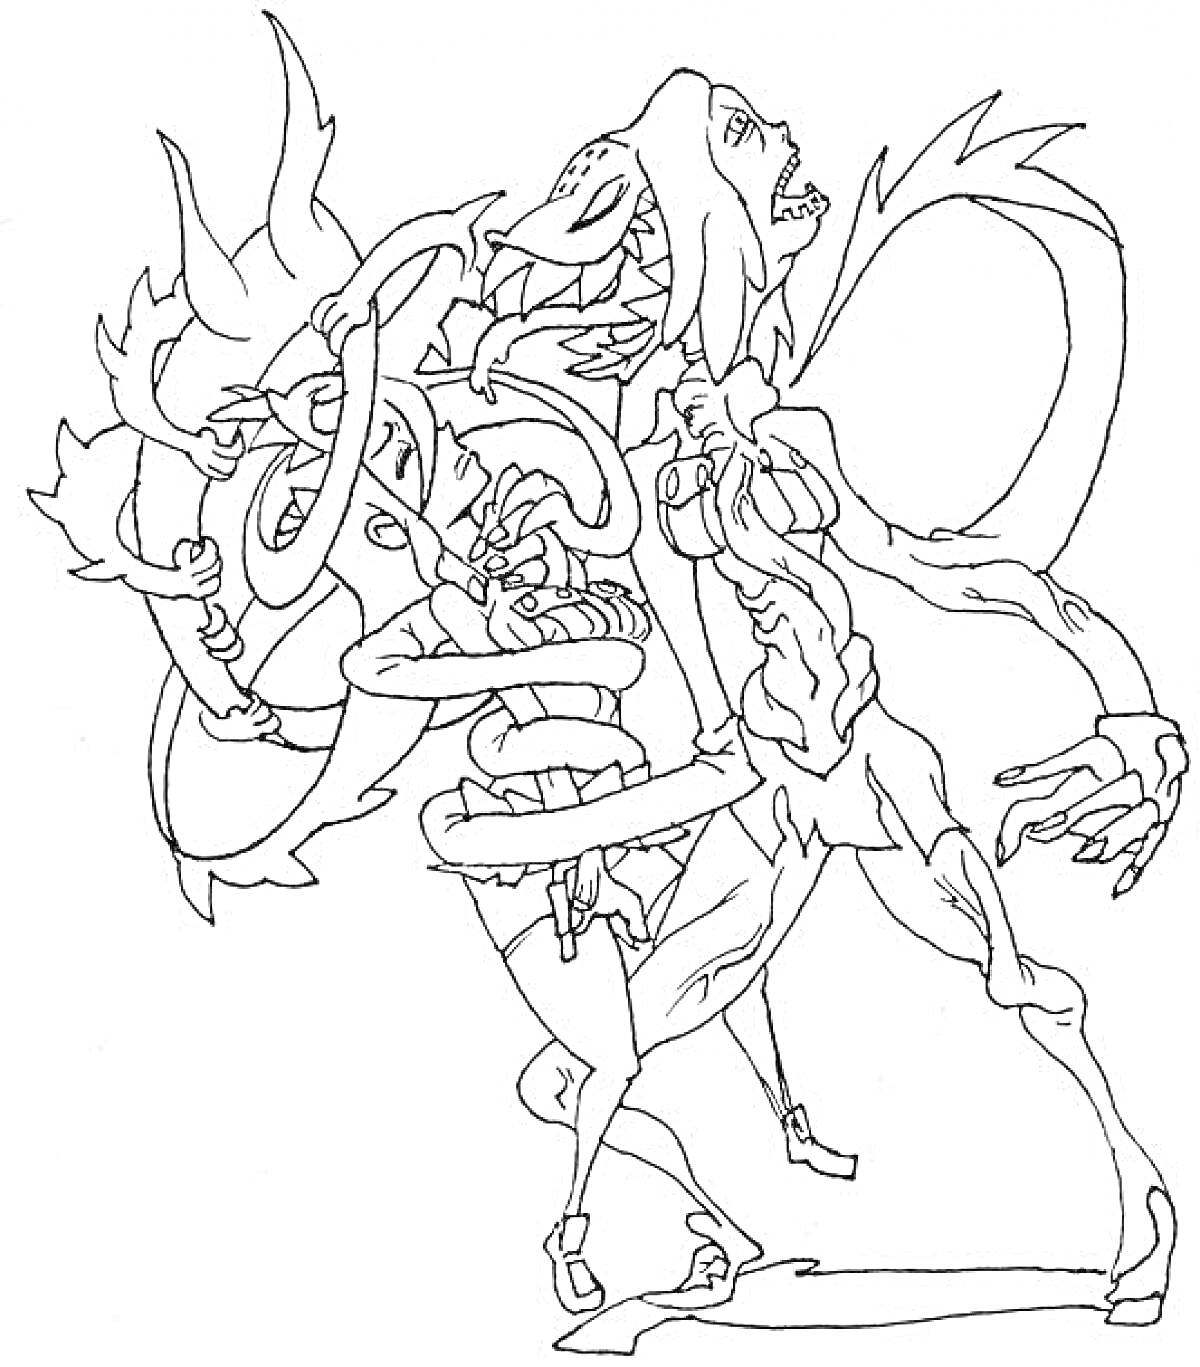 Раскраска Персонажи Skullgirls с элементами костюмов и монструозными частями тел